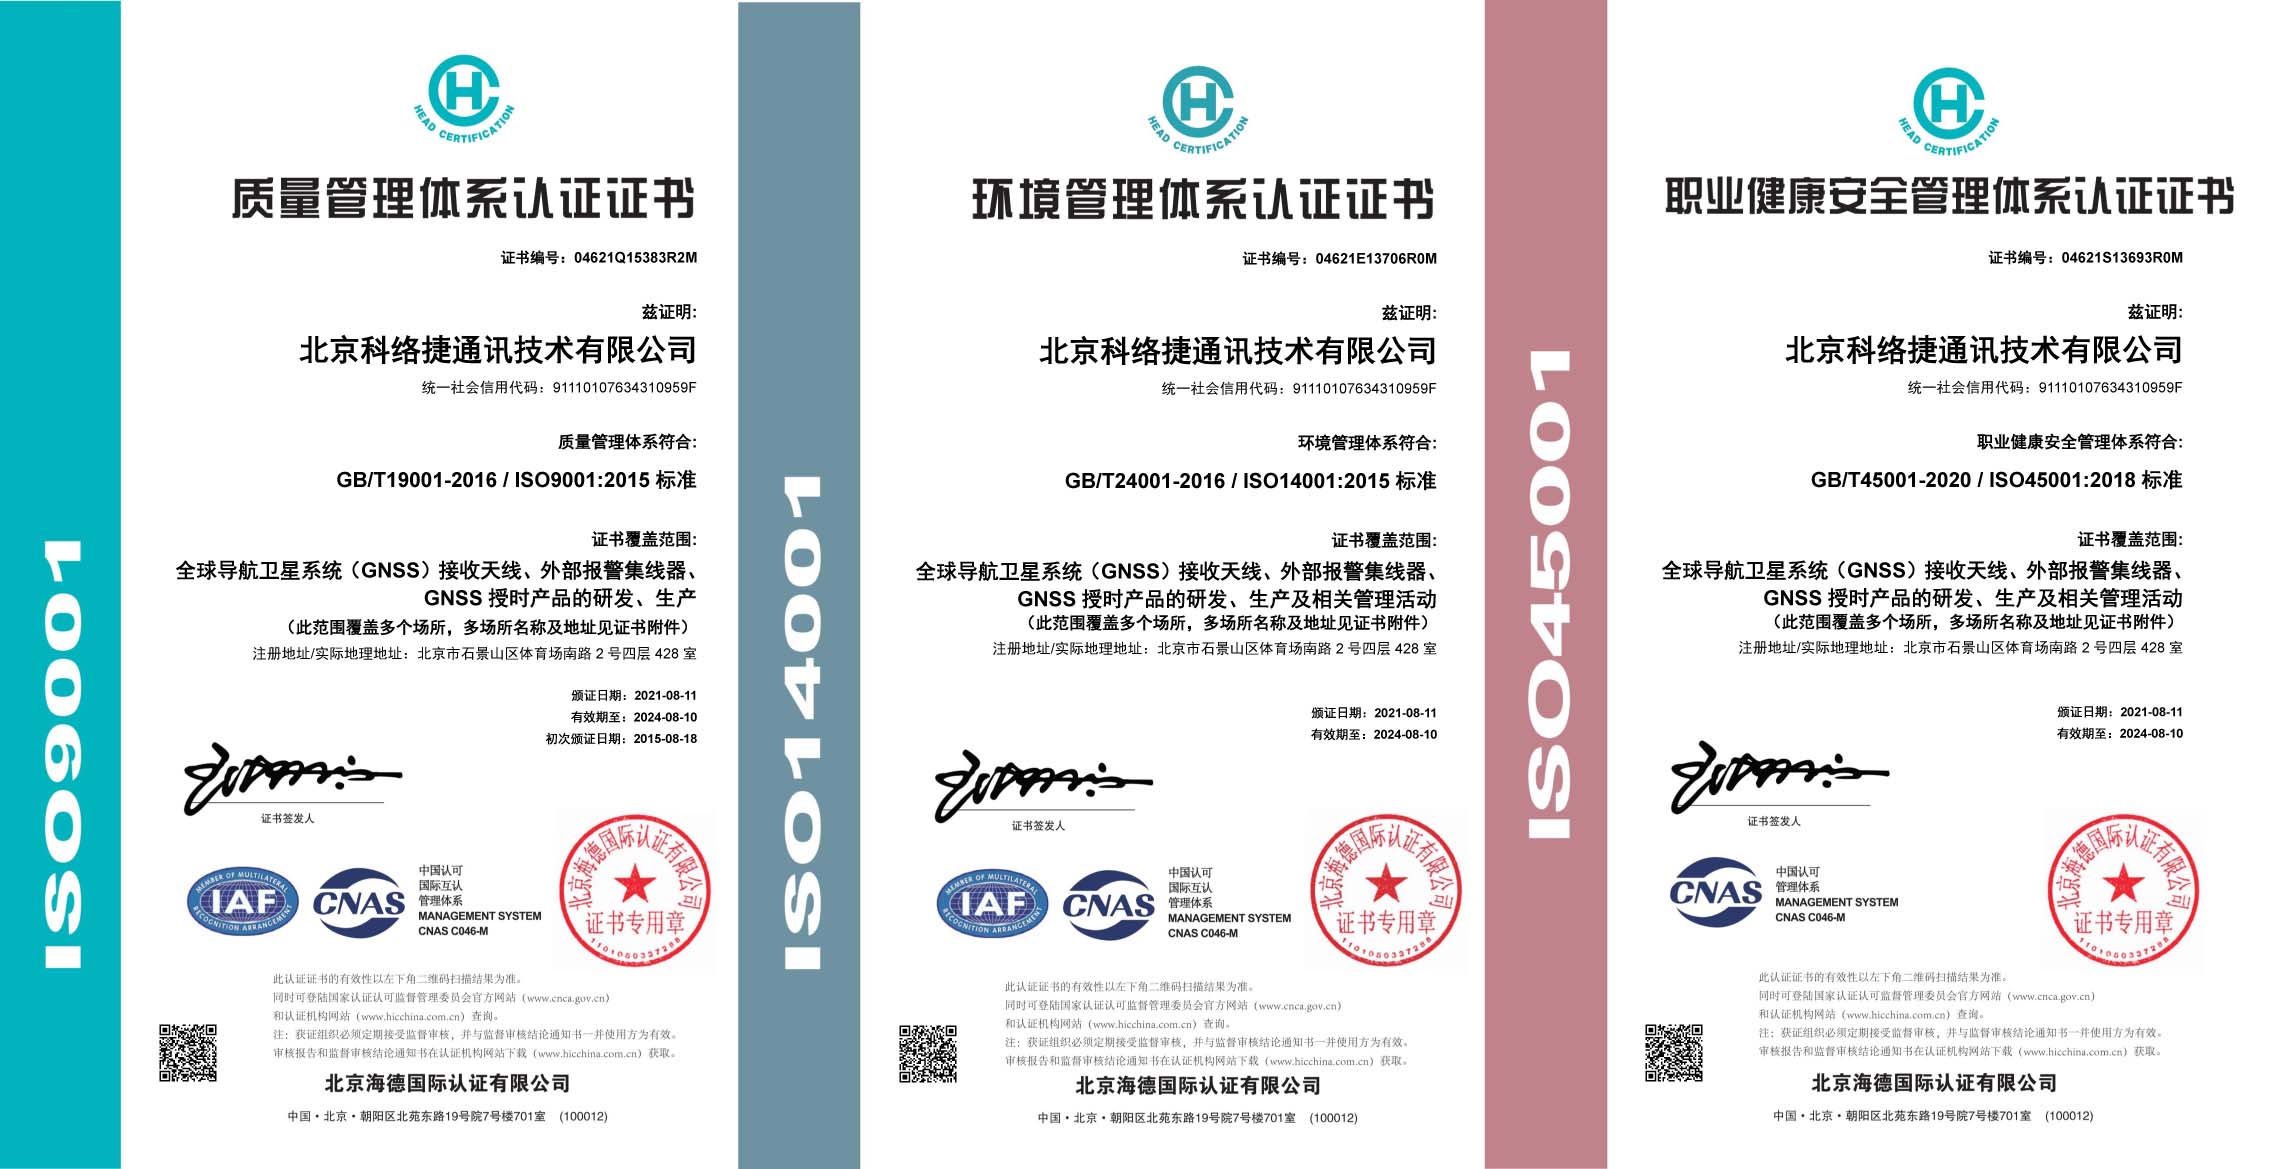 北京科络捷通讯技术有限公司通过三体系 ISO9001 / 14001/45001认证